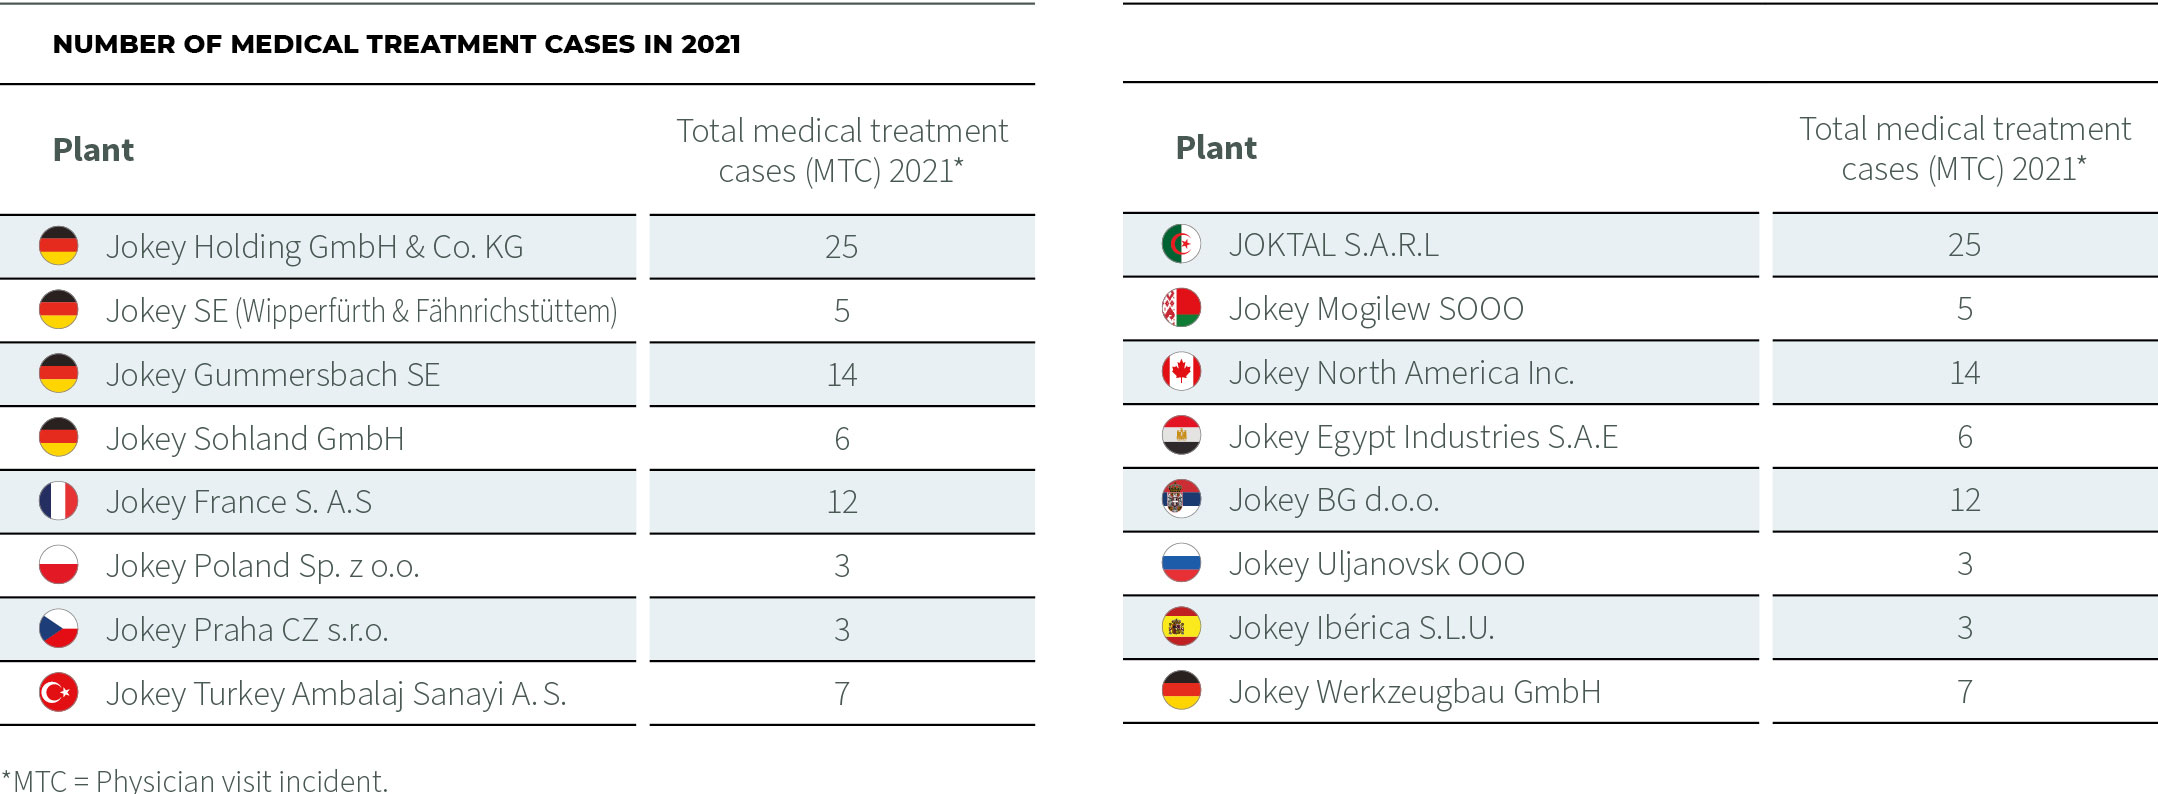 Tabular presentation of medical treatments in 2021